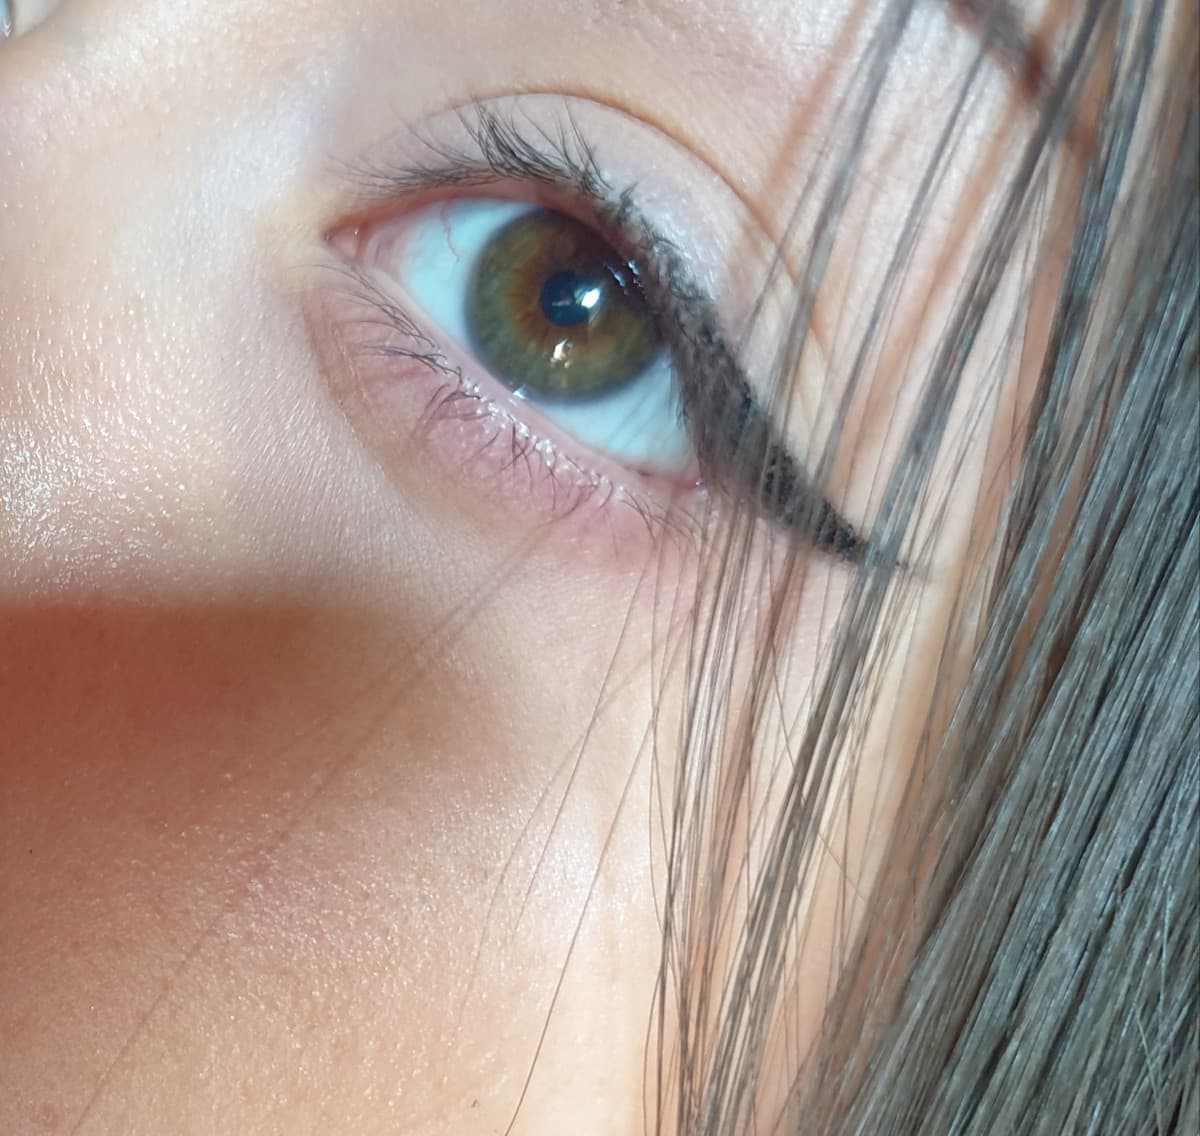 come si chiama questo colore di occhi?